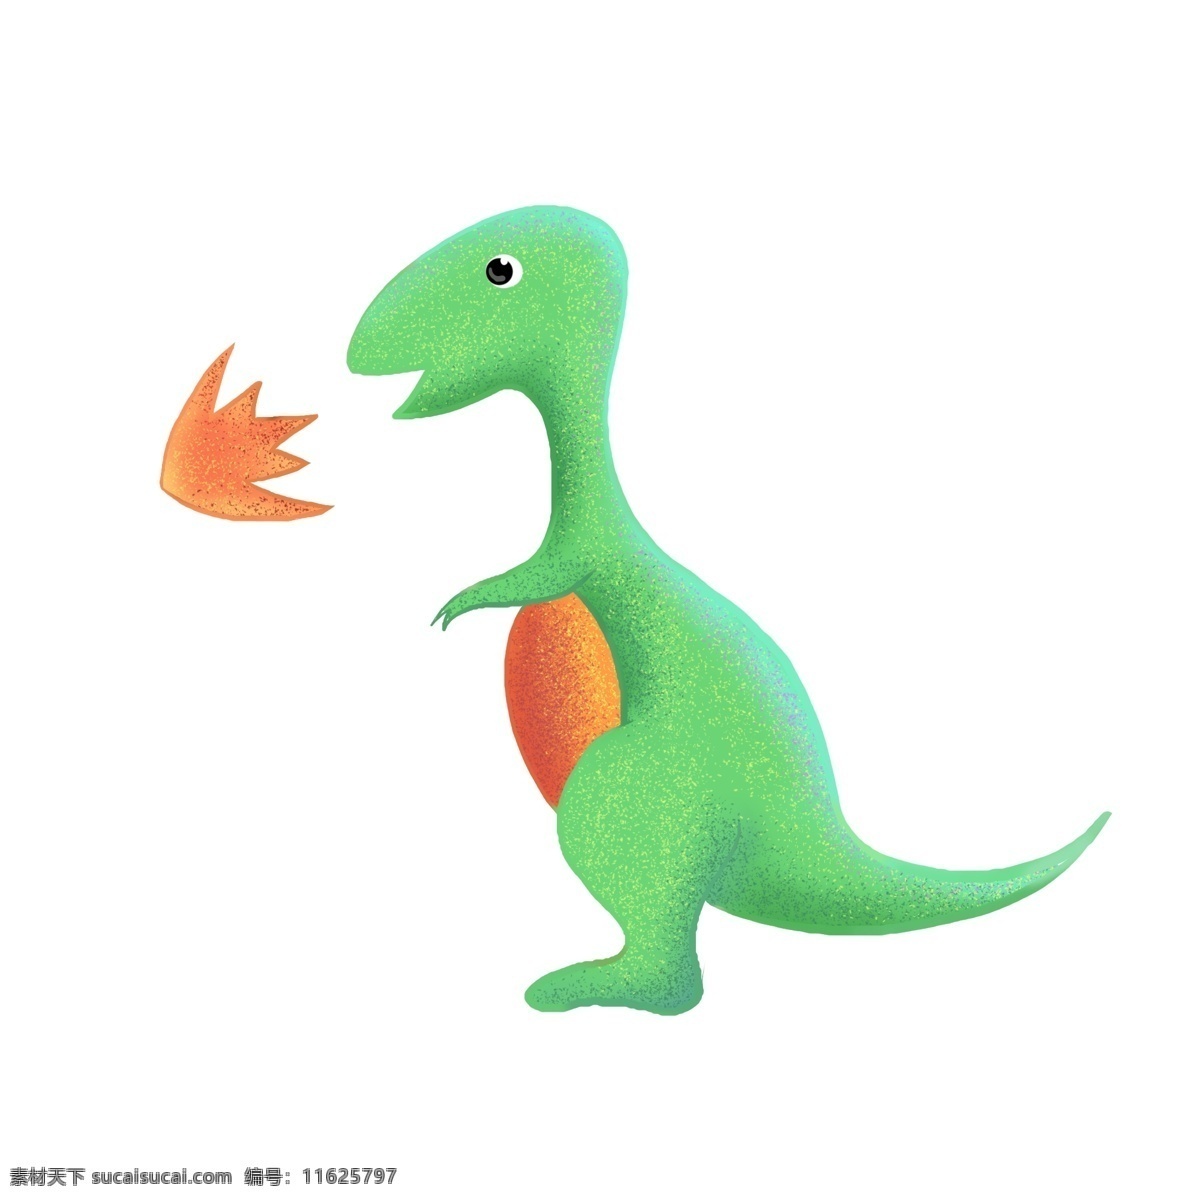 Spitfire Dinosaur PNG рисунок, картинки и пнг прозрачный для бесплатной загрузки | Pngtree